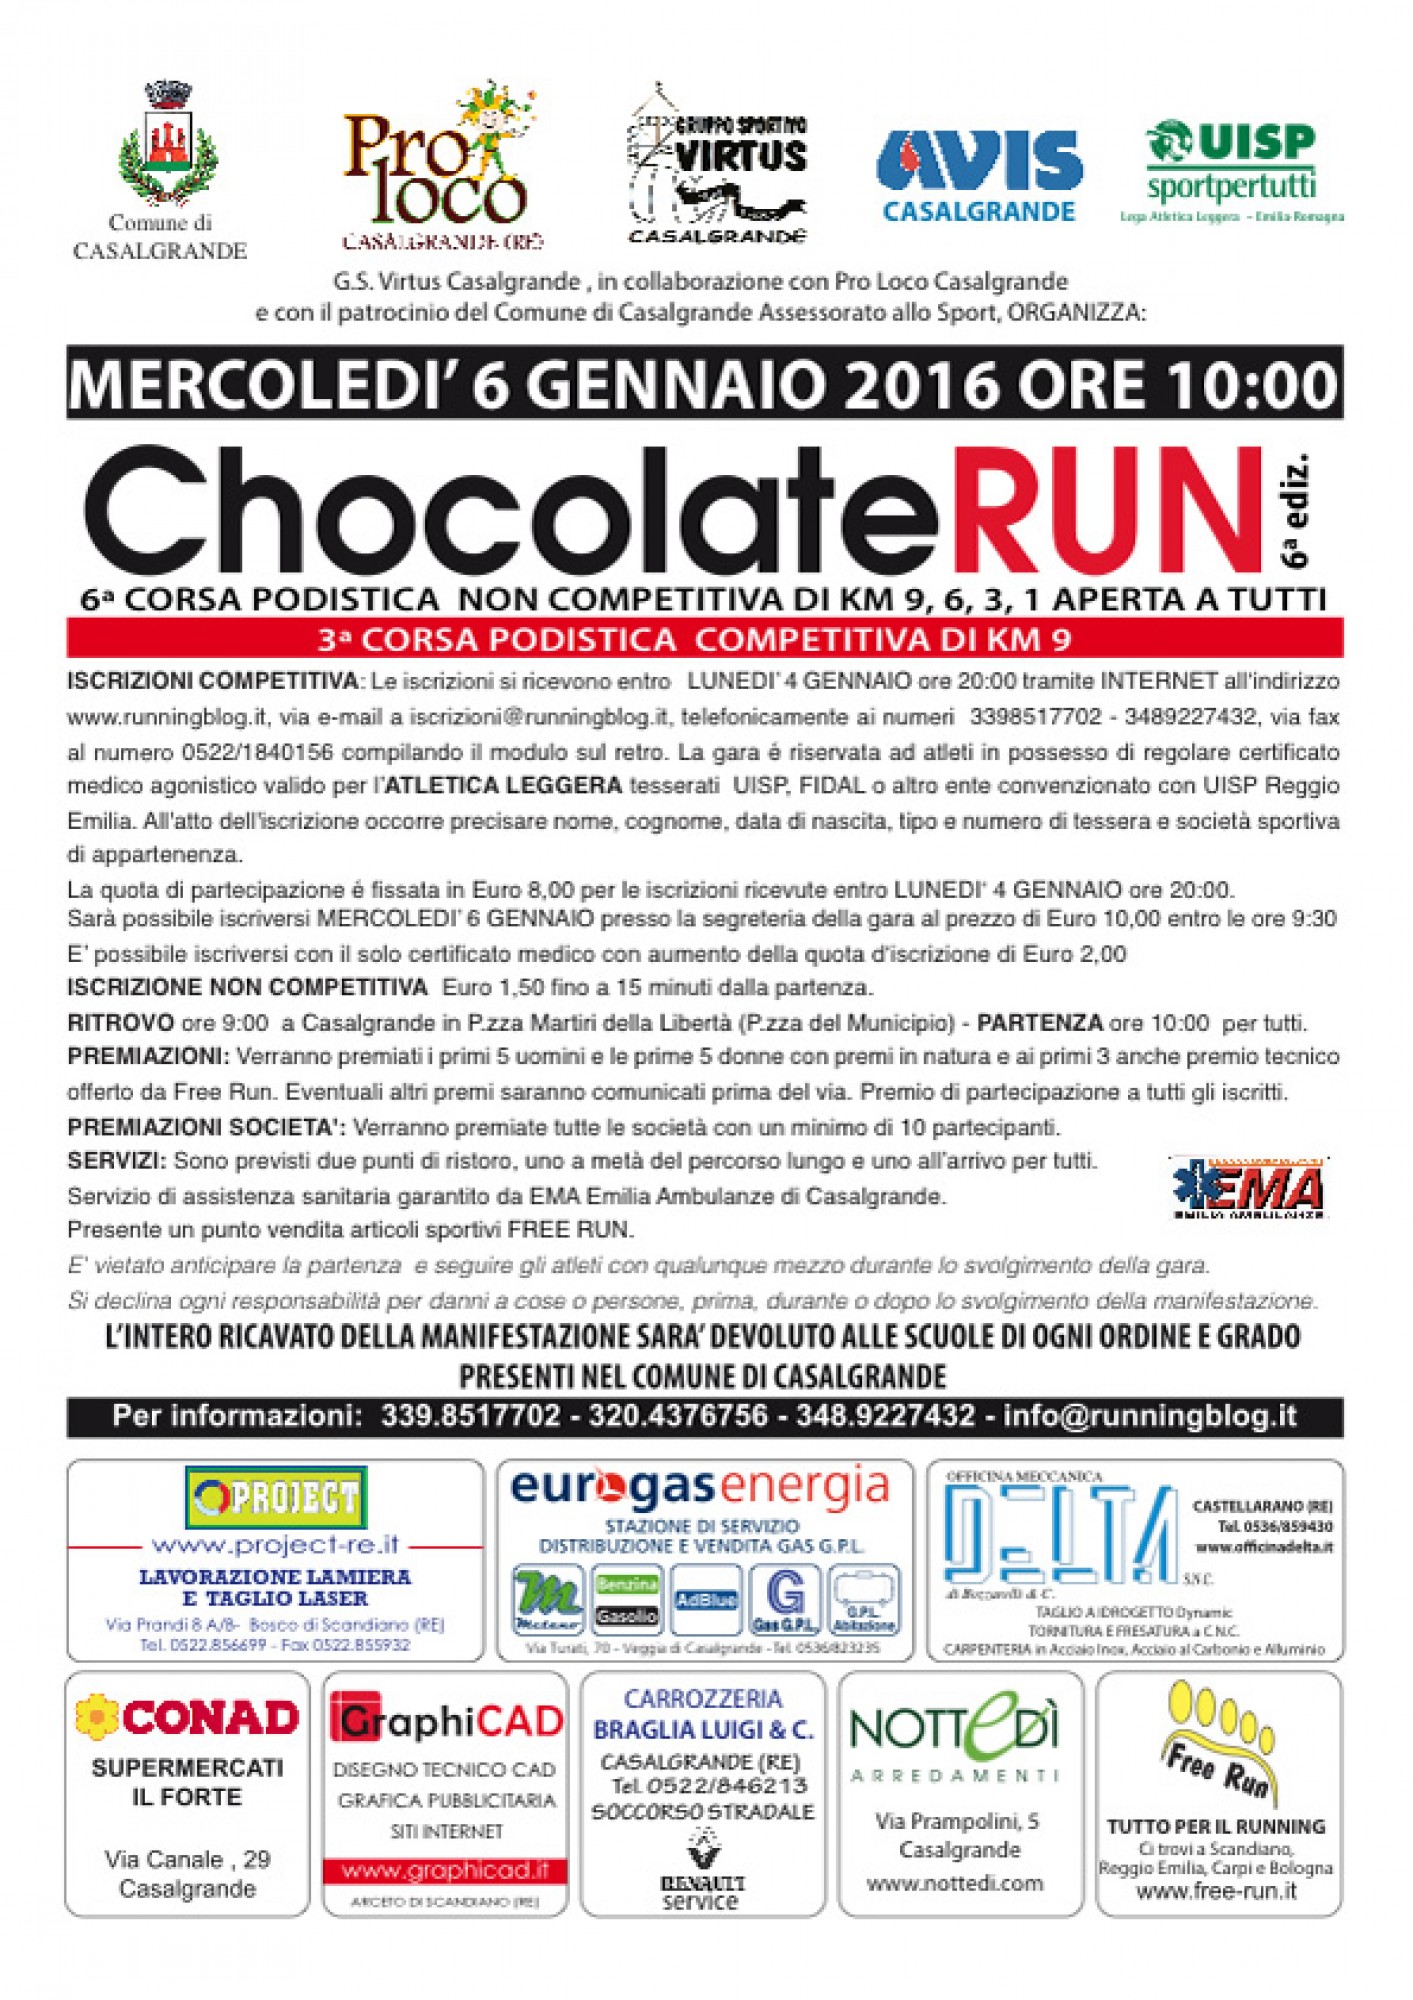 Chocolate Run 2016 